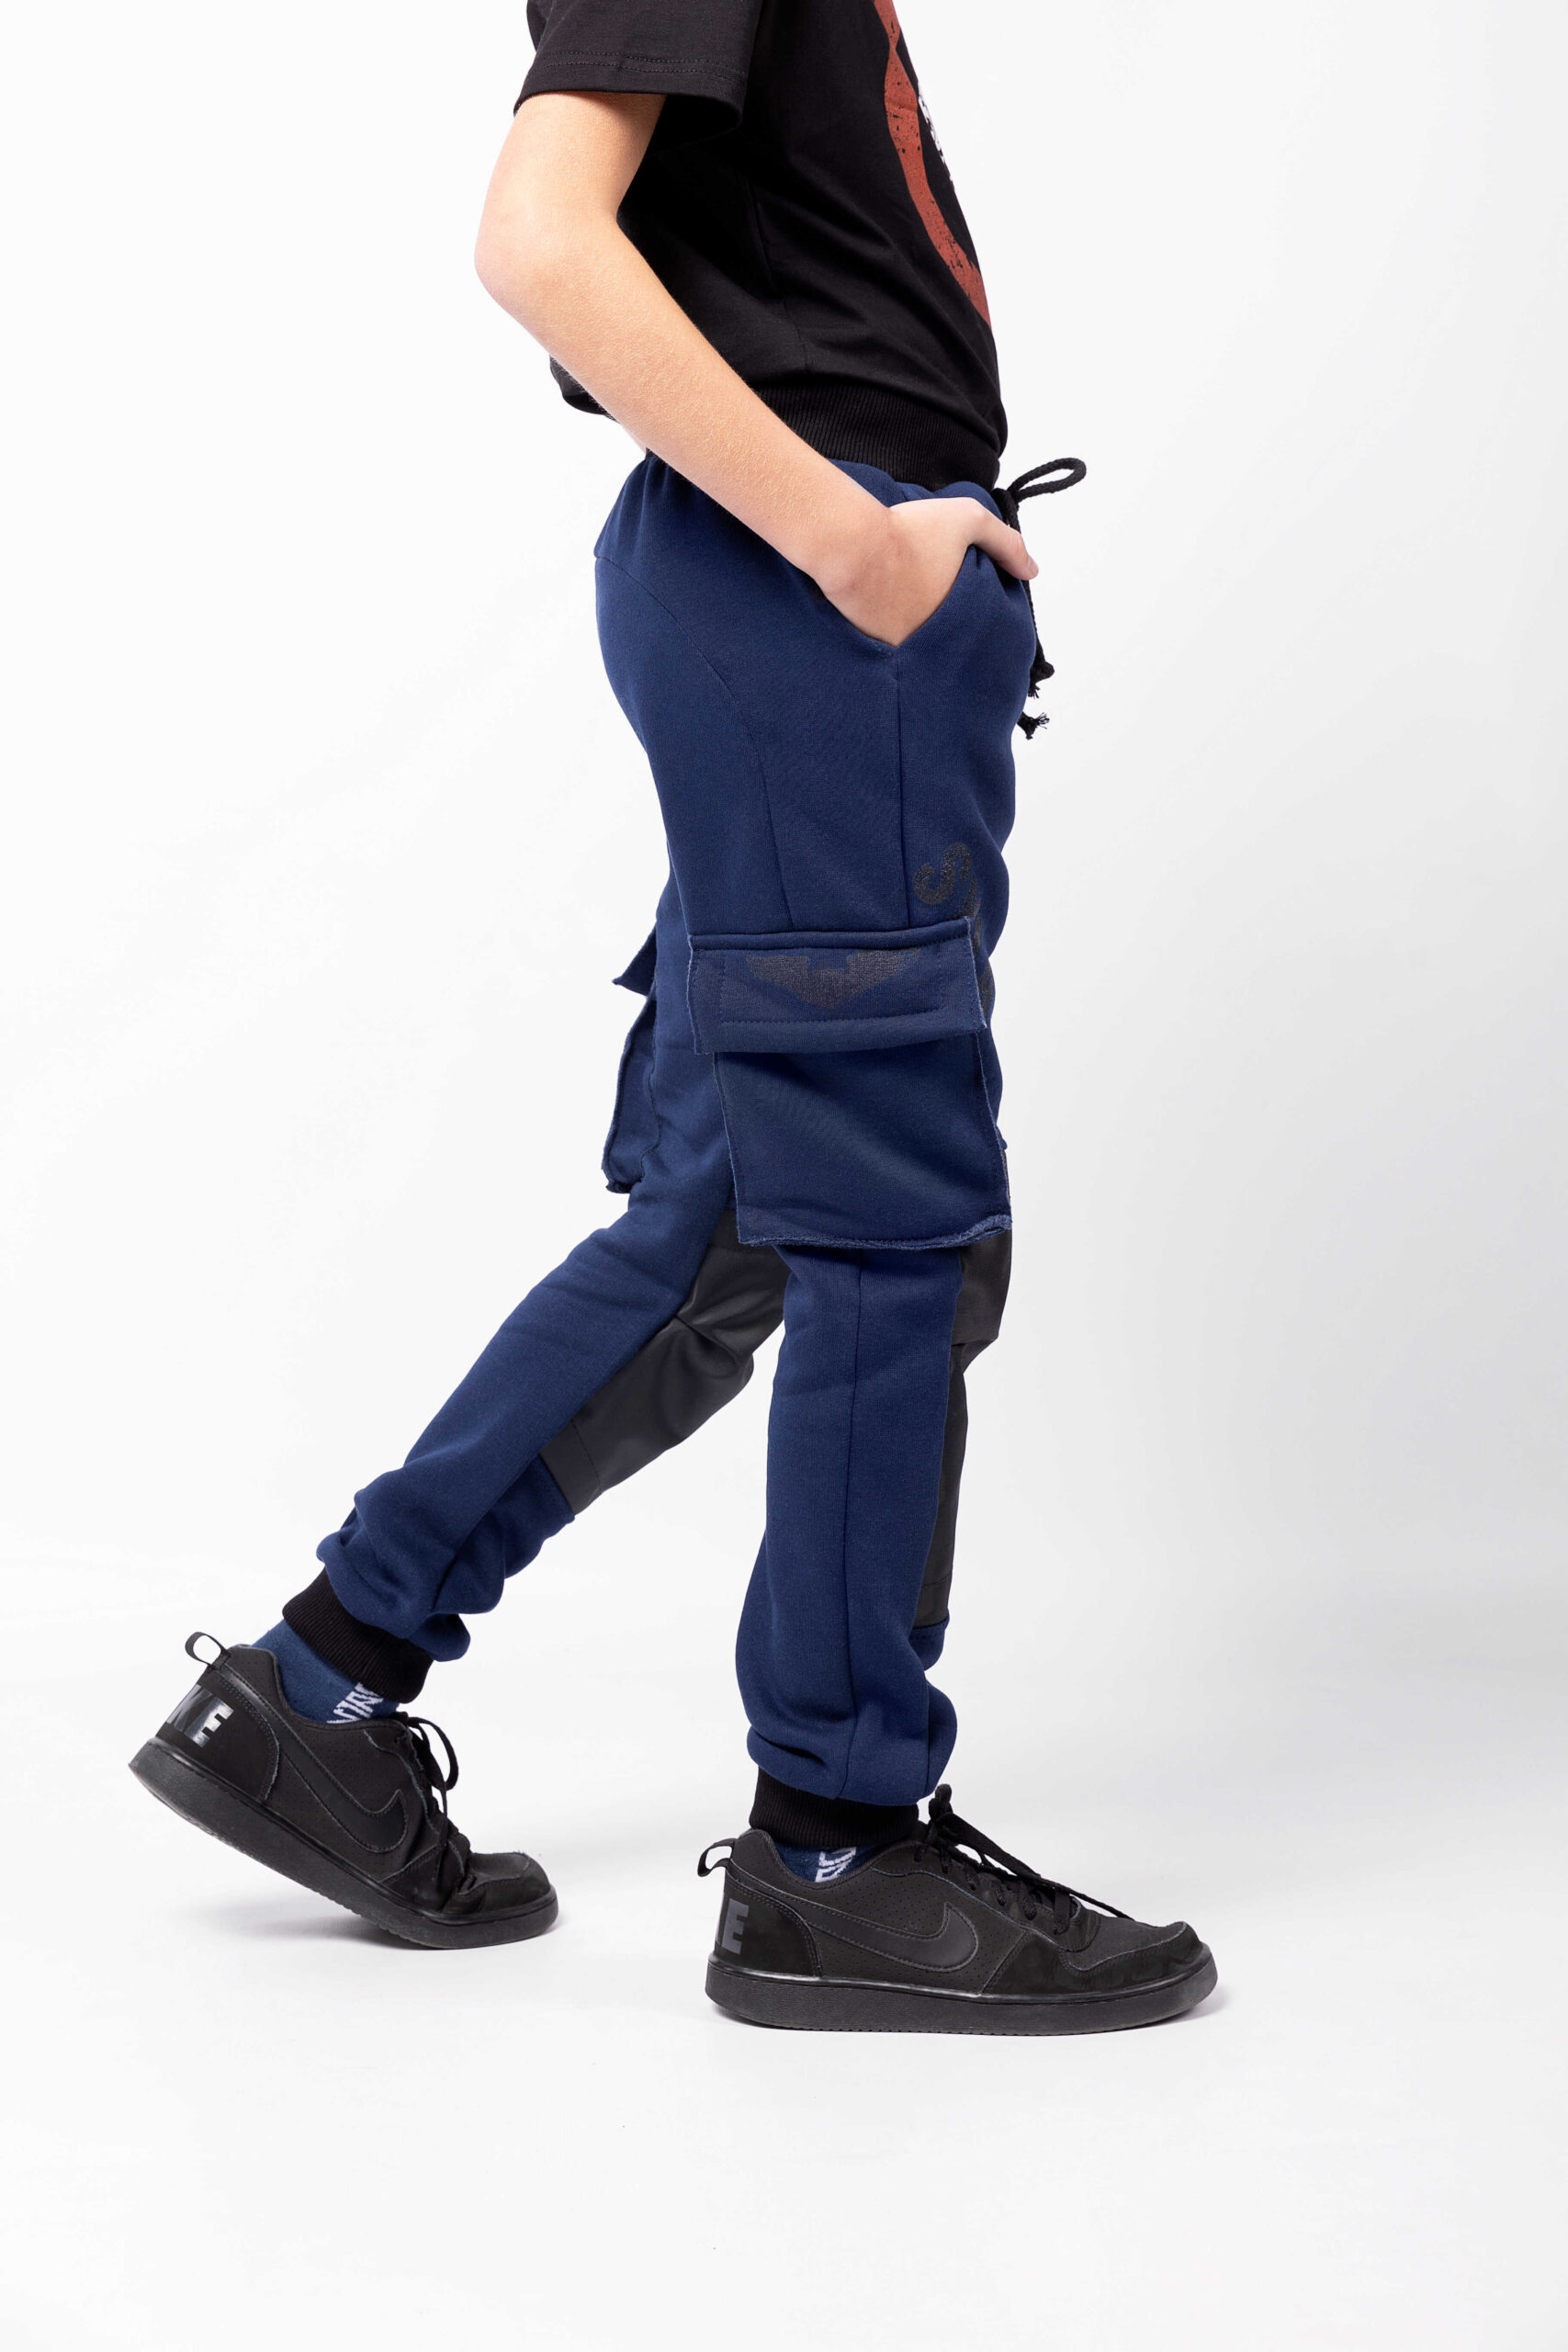 Kids Pants Syla. Color navy blue. Unisex pants.